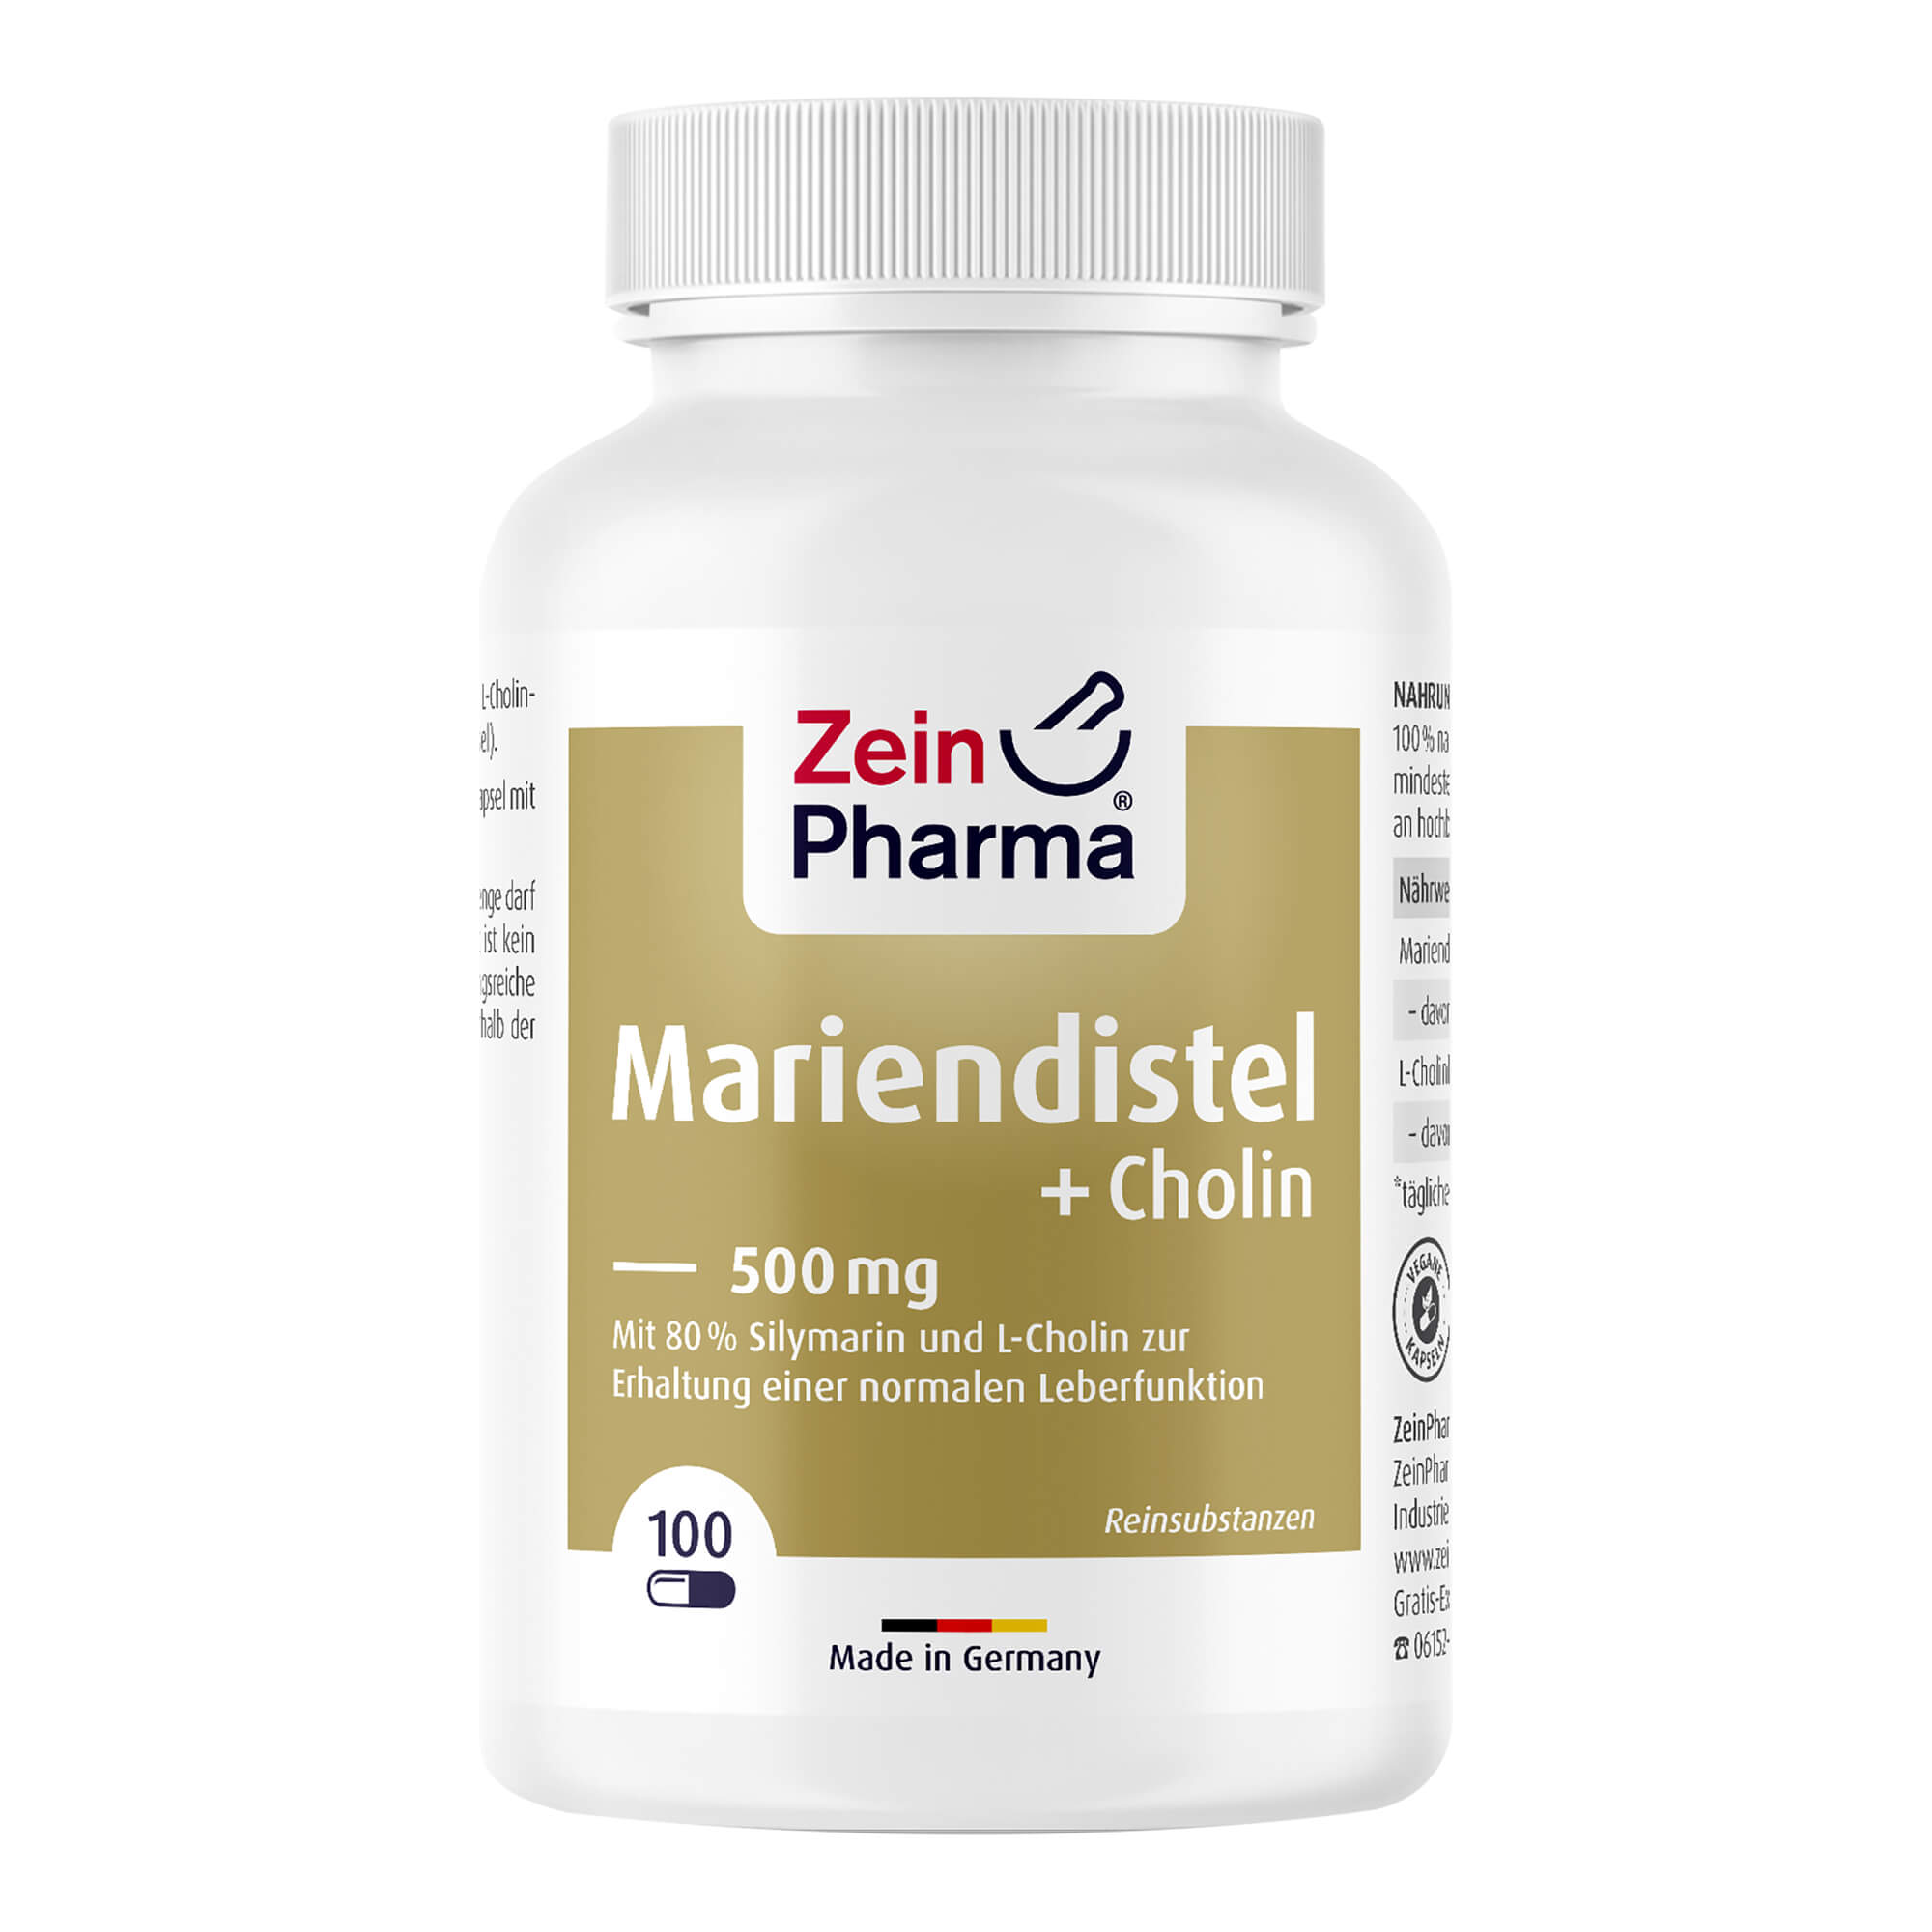 Mariendistel-Extrakt mit 80% Silymarin und dem Zusatz an natürlichem L-Cholin.